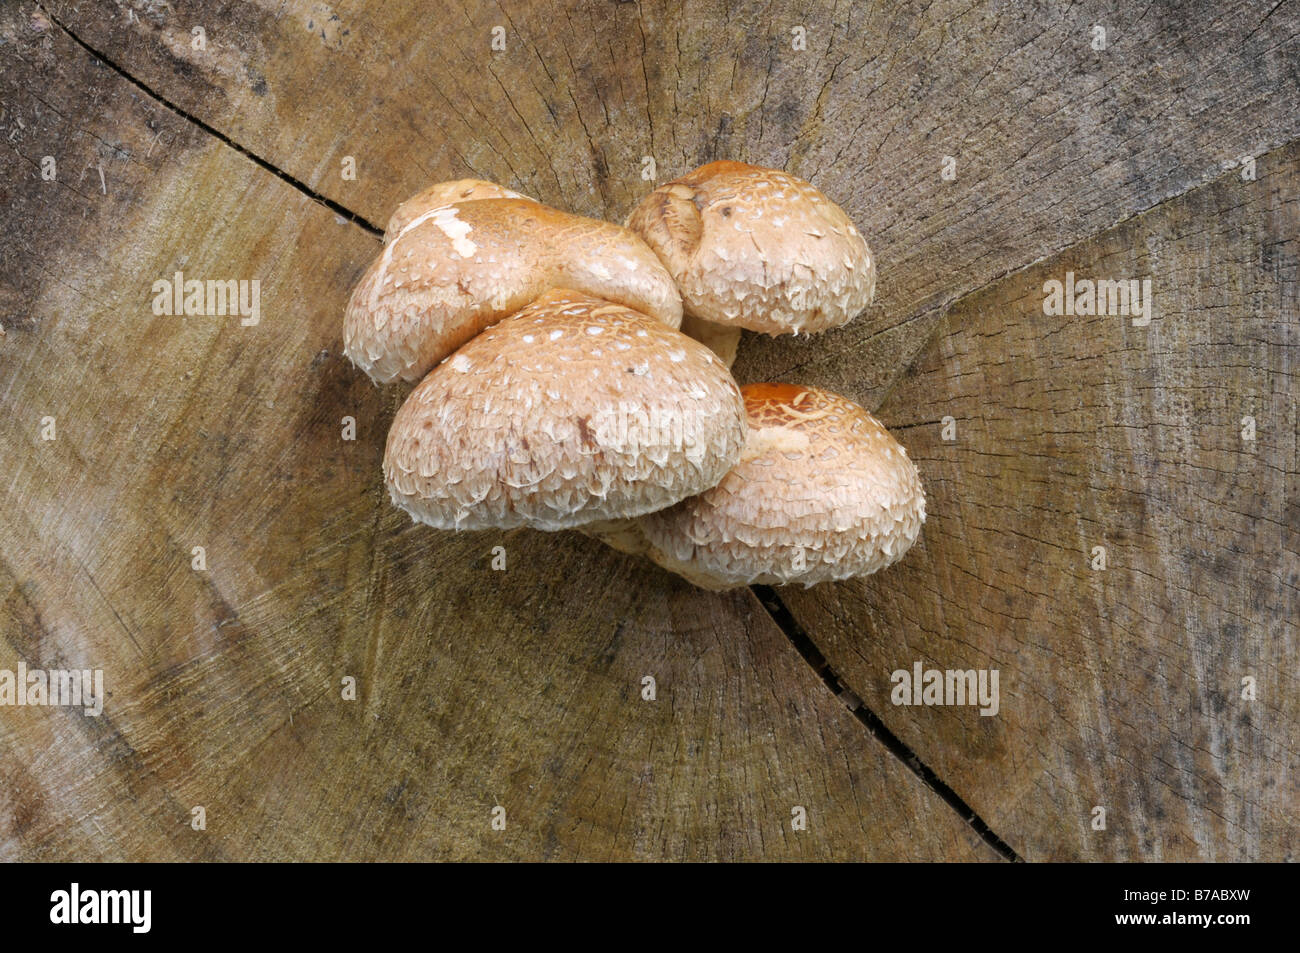 Funghi (Agaricomycetidae) che cresce sull'estremità anteriore di un ceppo di albero, legno morto Foto Stock